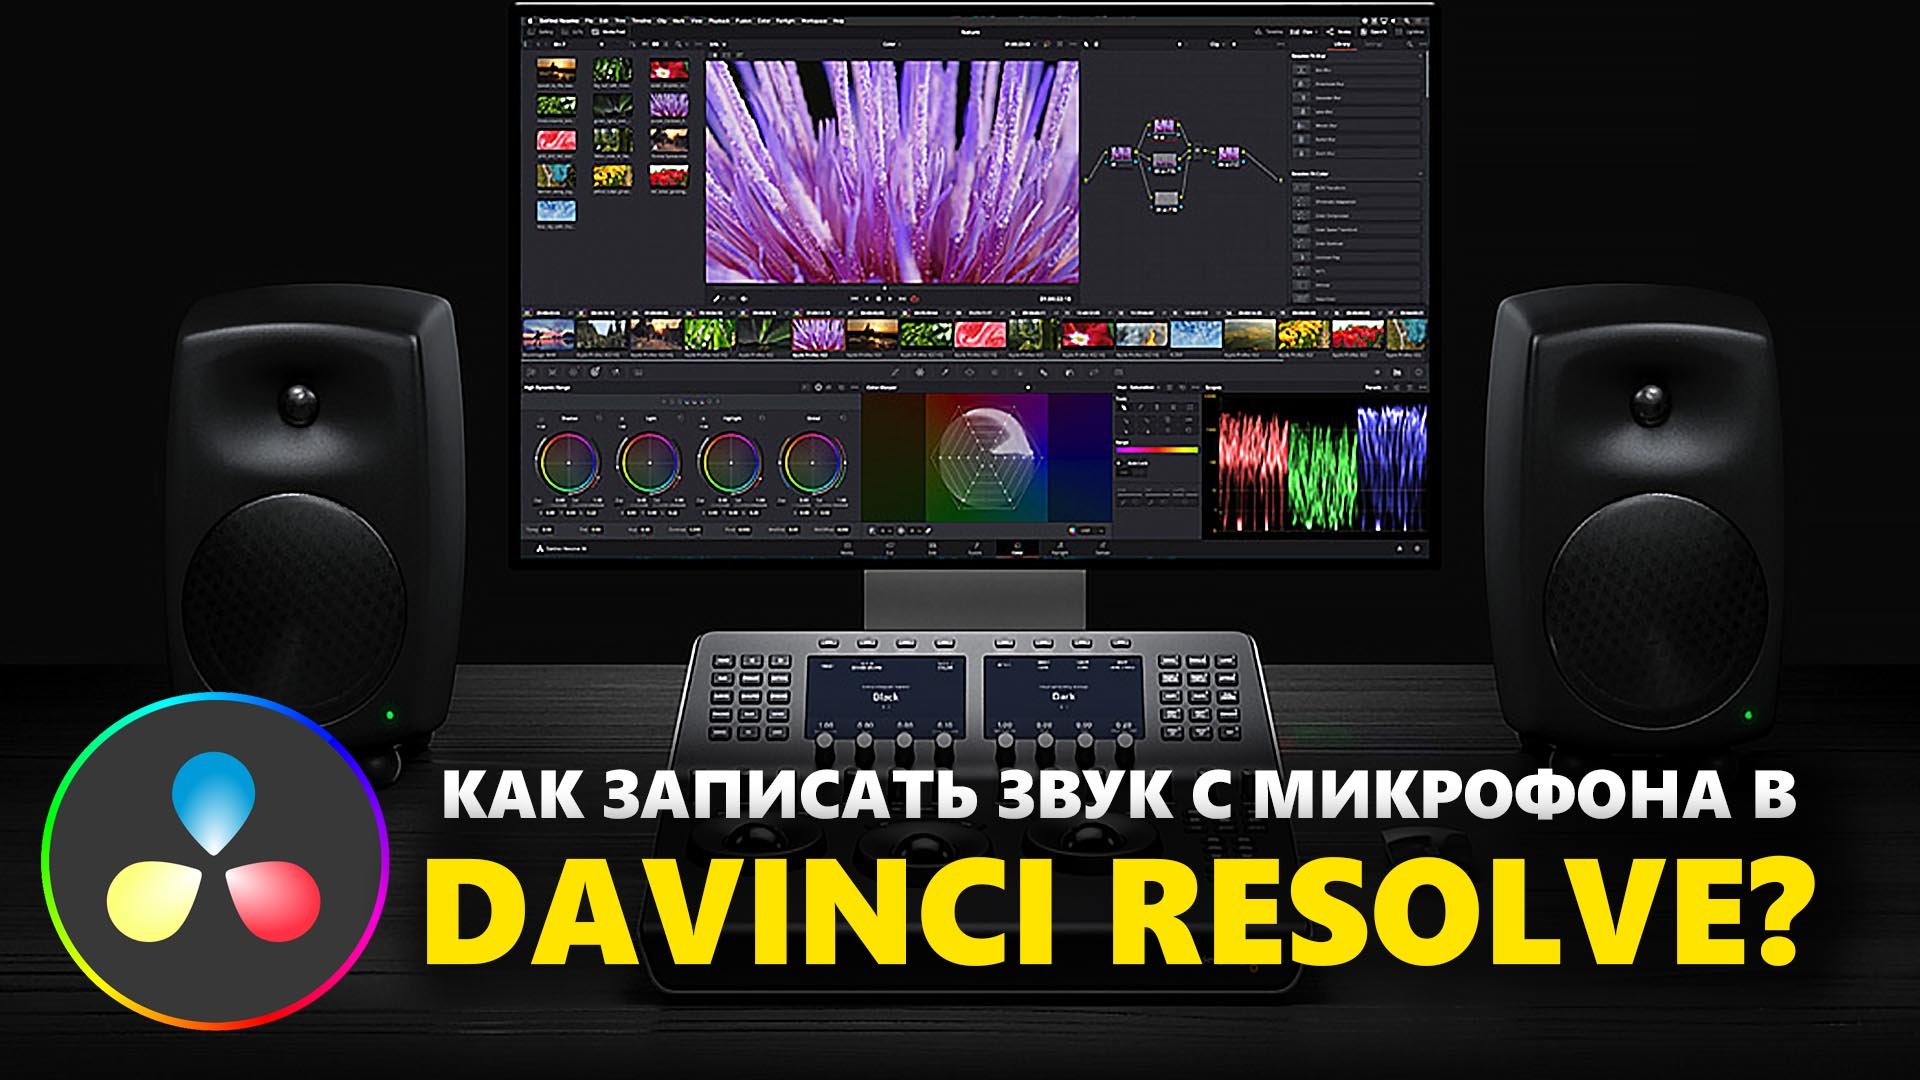 Как в программе DaVinci Resolve записать звук с микрофона?